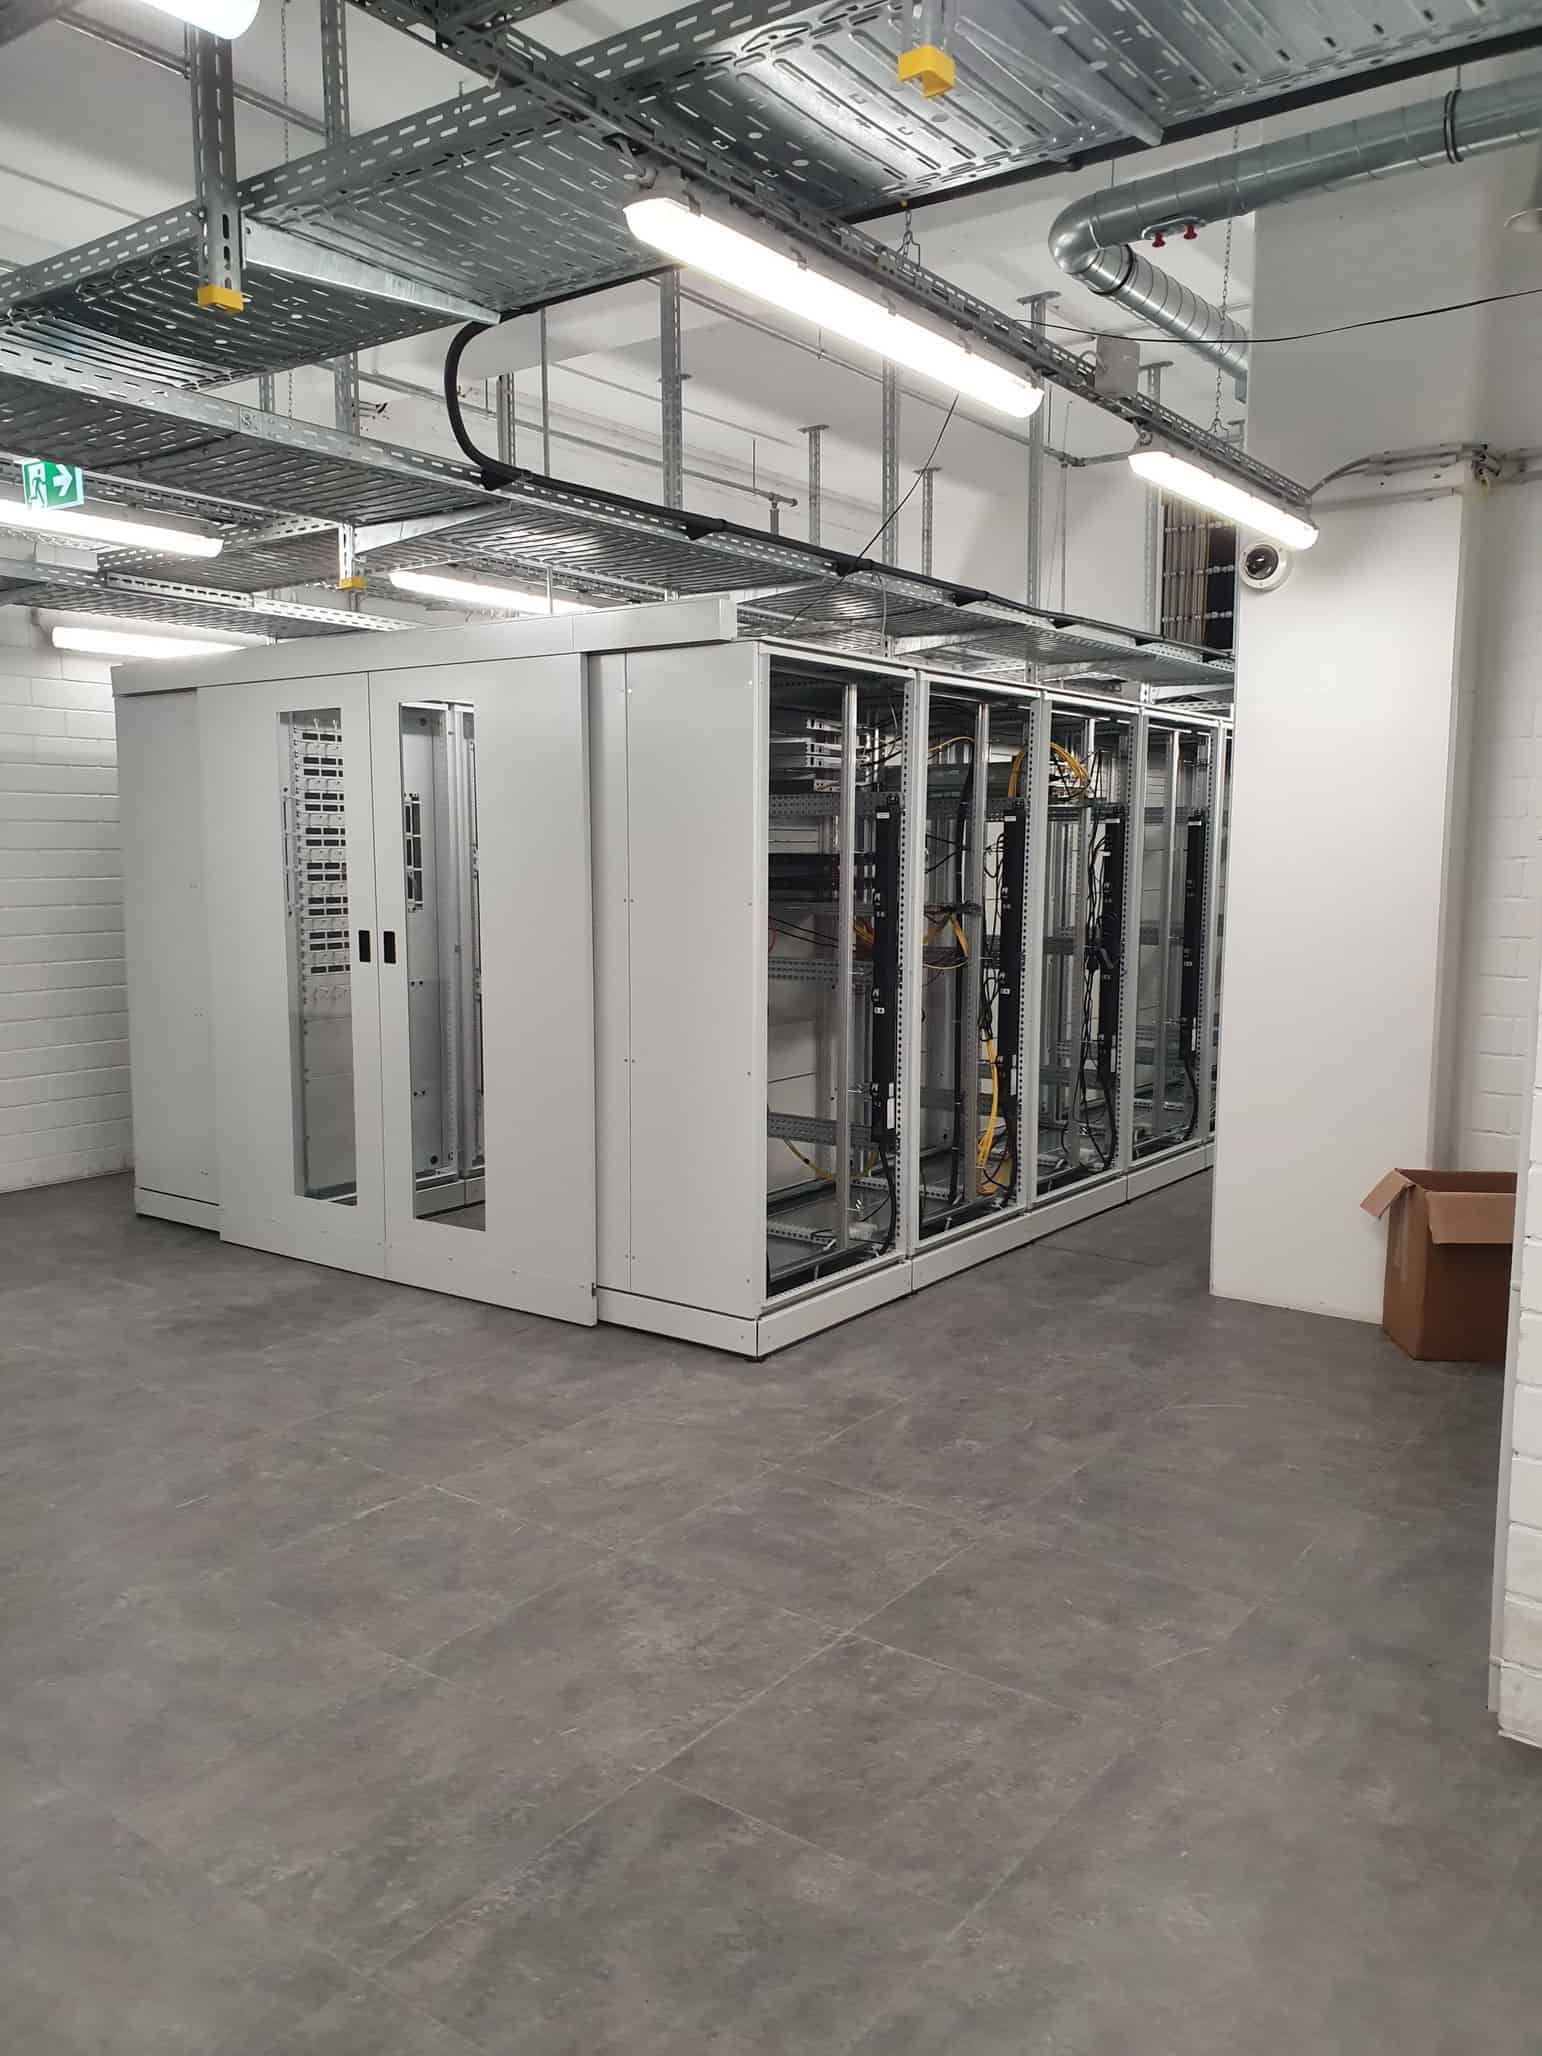 Rechenzentrum, 32 Serverschränke mit ca. 5001 Anschlussports